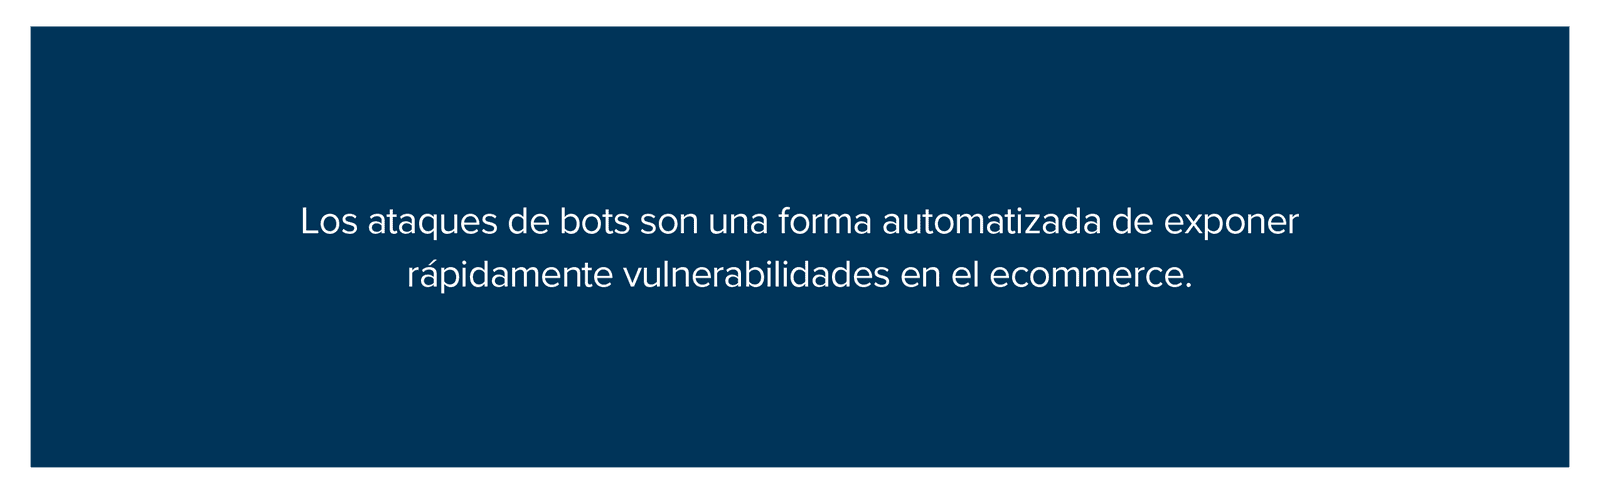 Los ataques de bots son una forma automatizada de exponer rápidamente vulnerabilidades en el ecommerce.